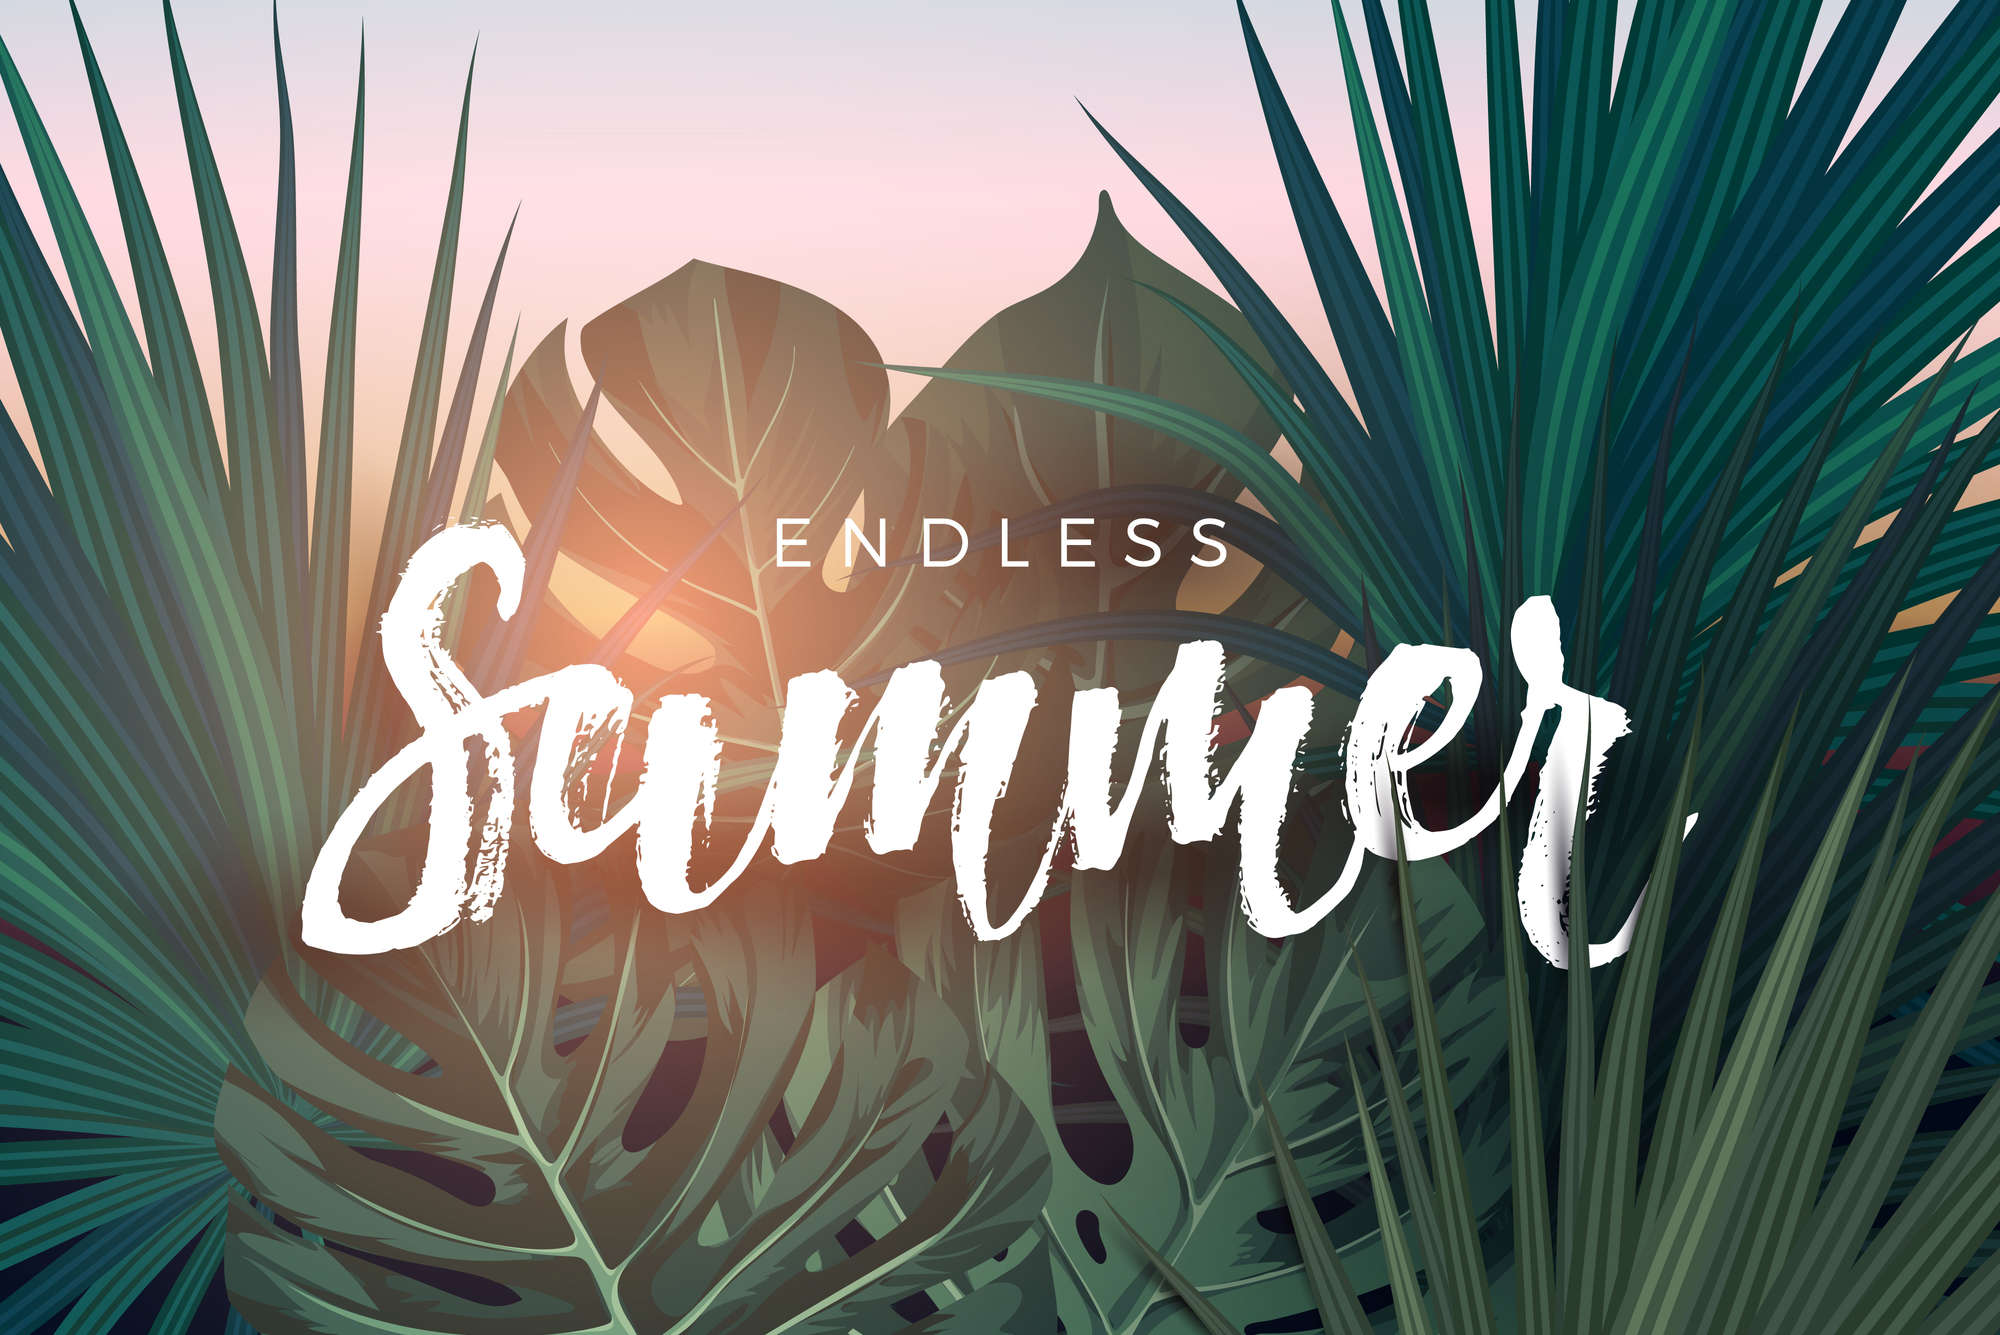             Grafisch behangpapier "Endless Summer" belettering op parelmoer gladde fleece
        